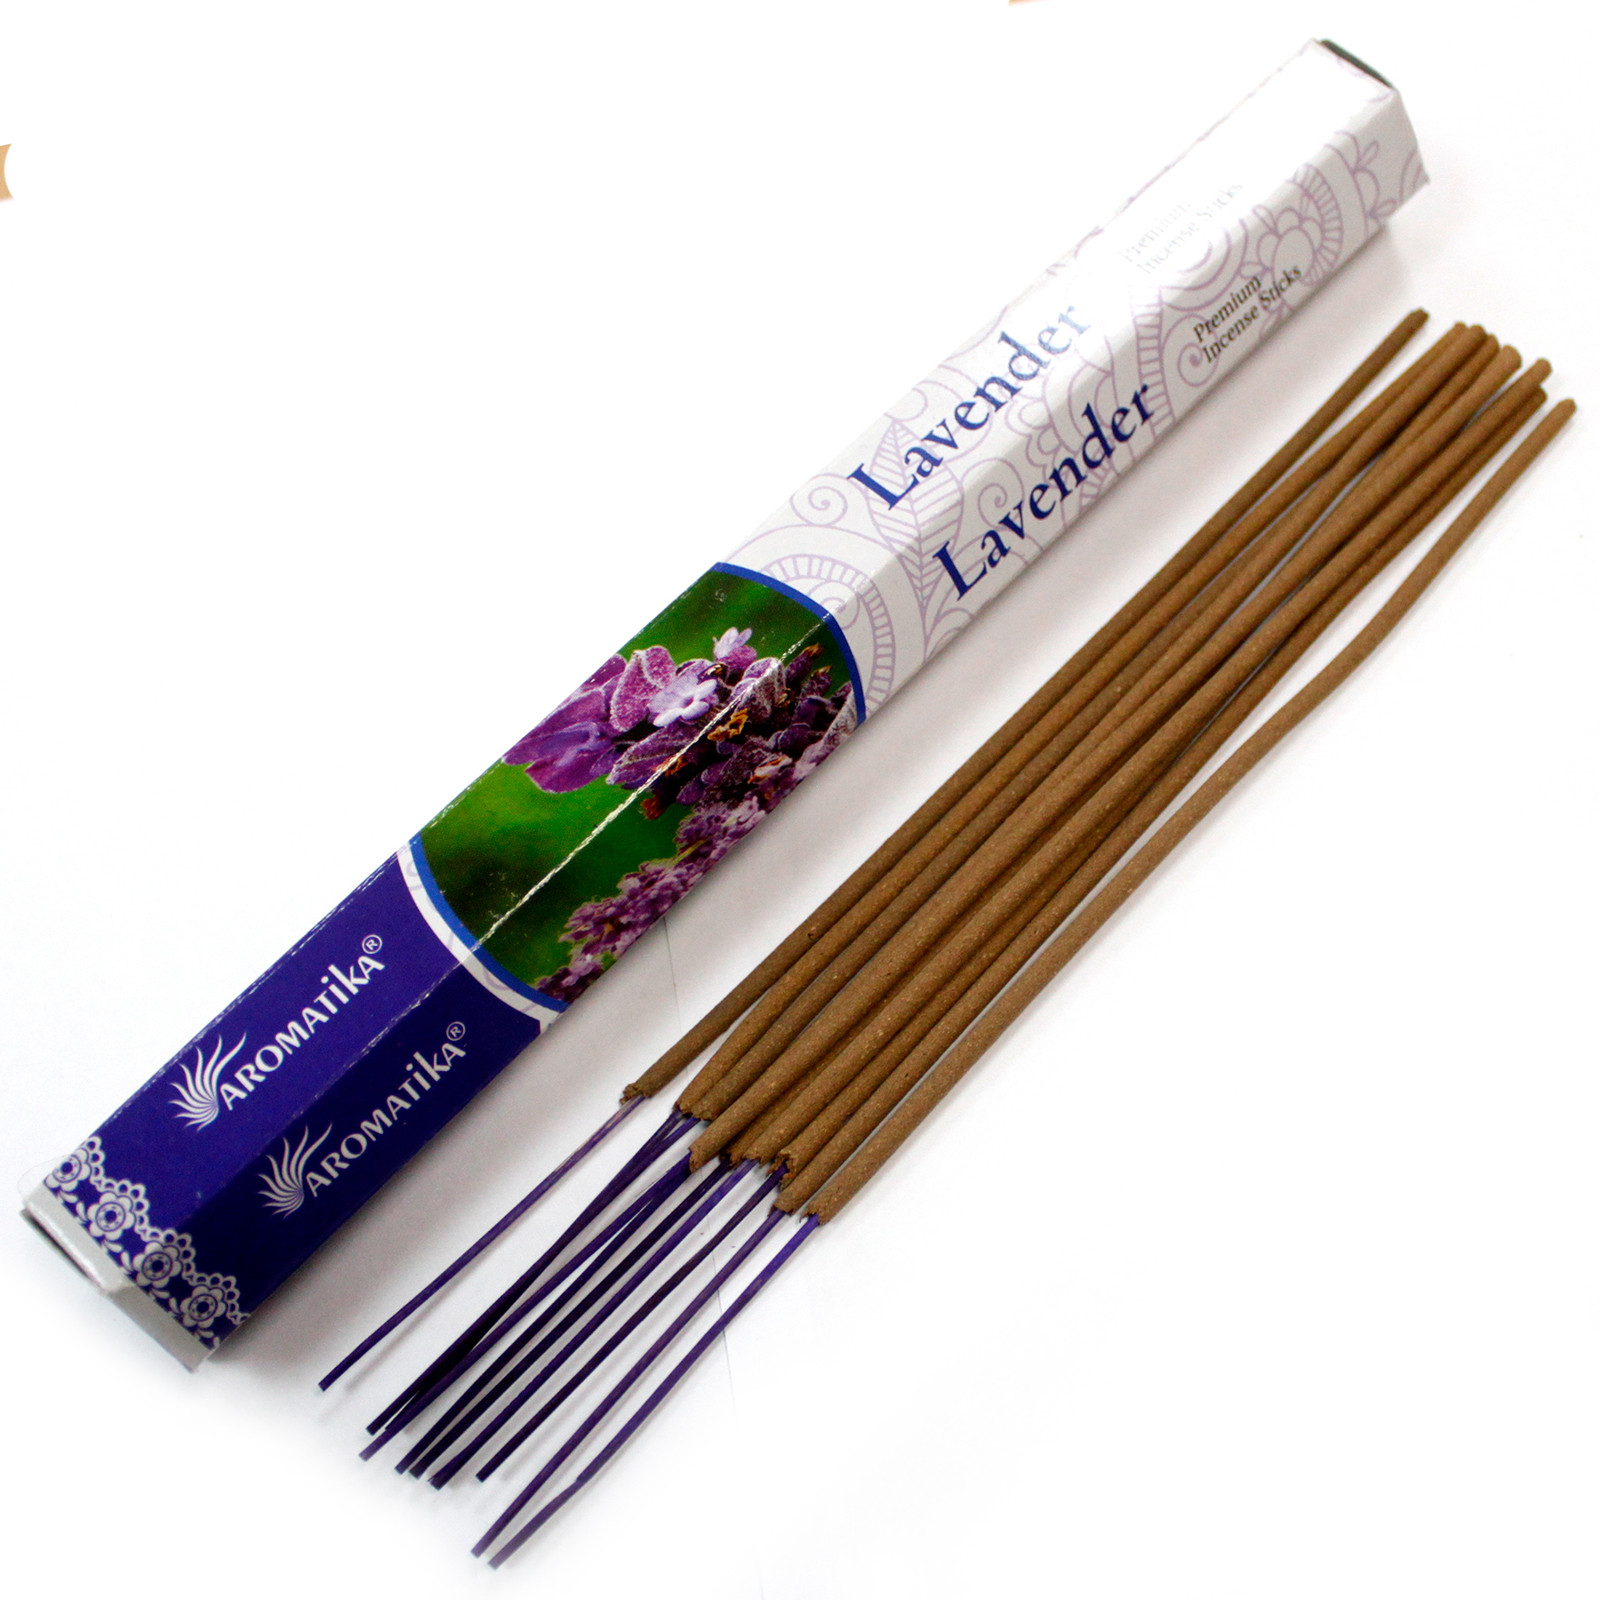 Lavender Aromatica Premium Incense Sticks